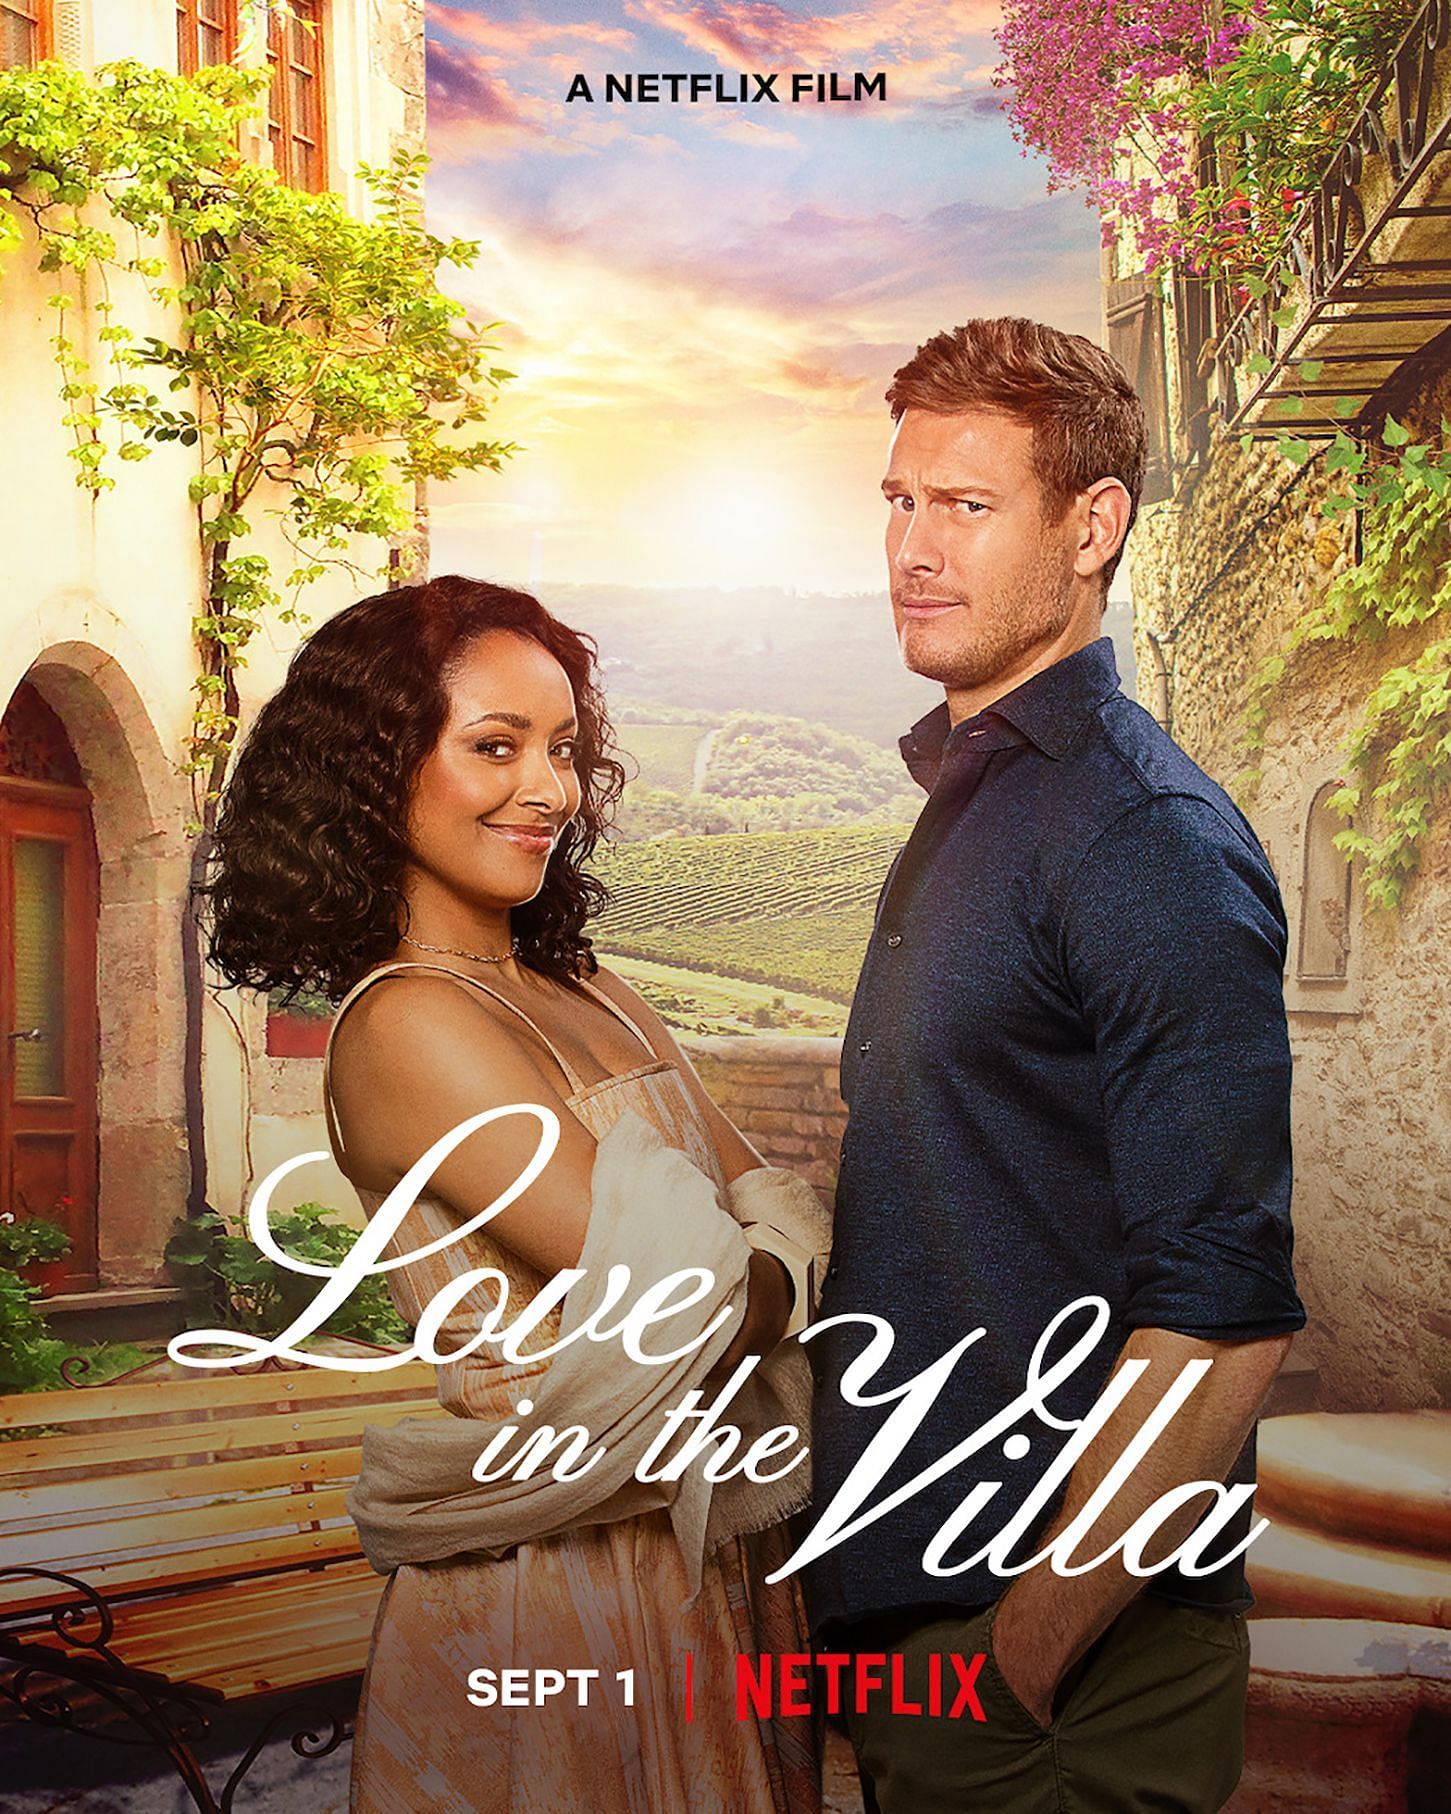 Love in the Villa (Image via Netflix)